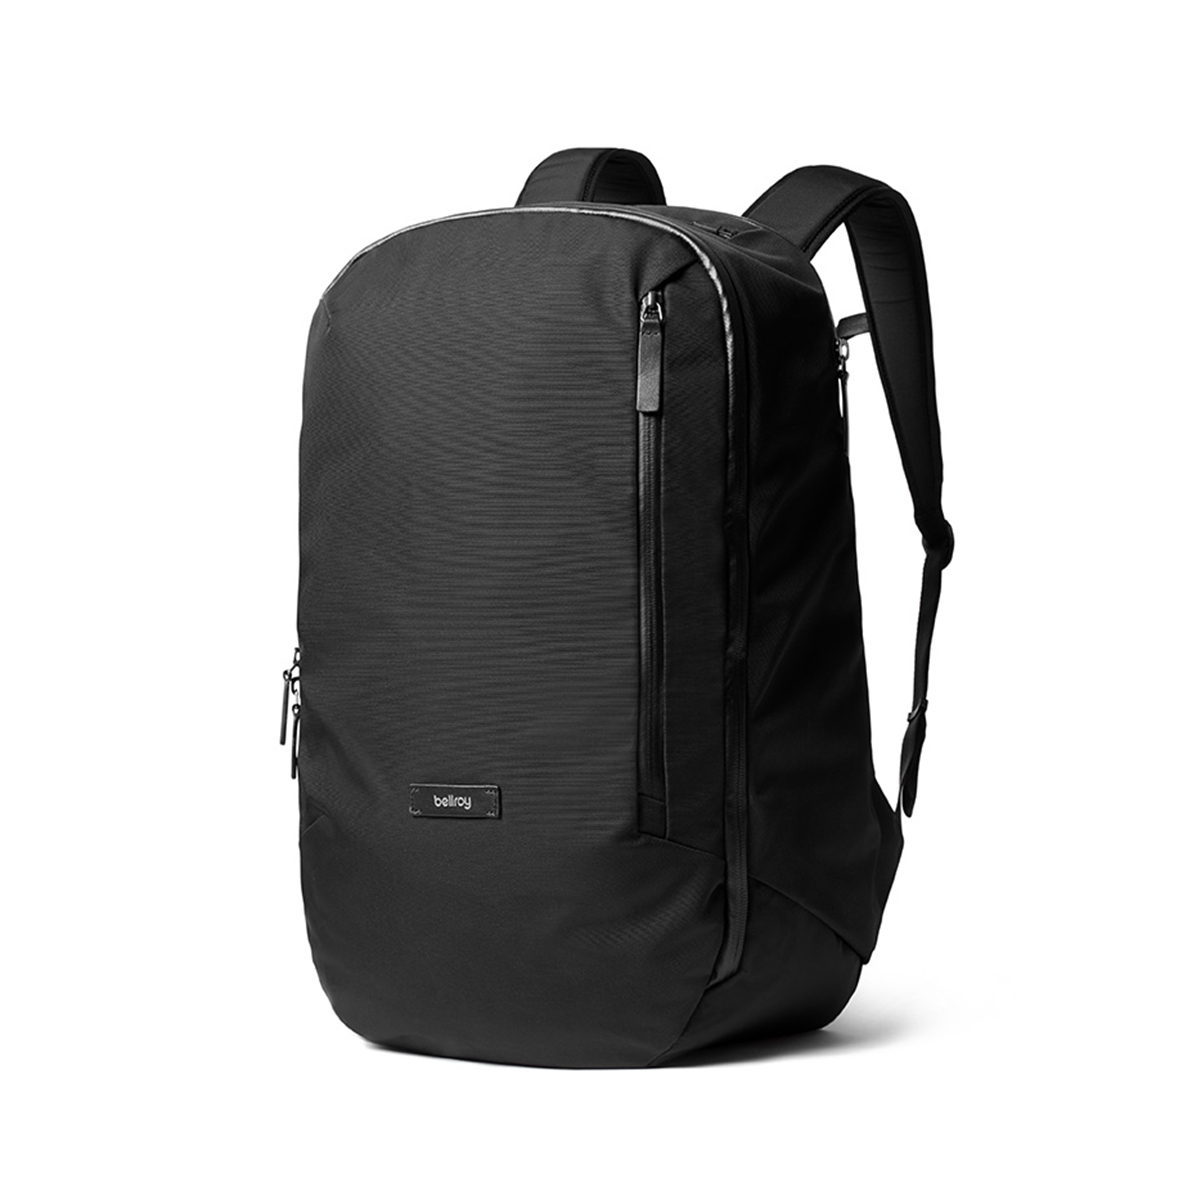 Transit Backpack | Large laptop travel backpack | Bellroy